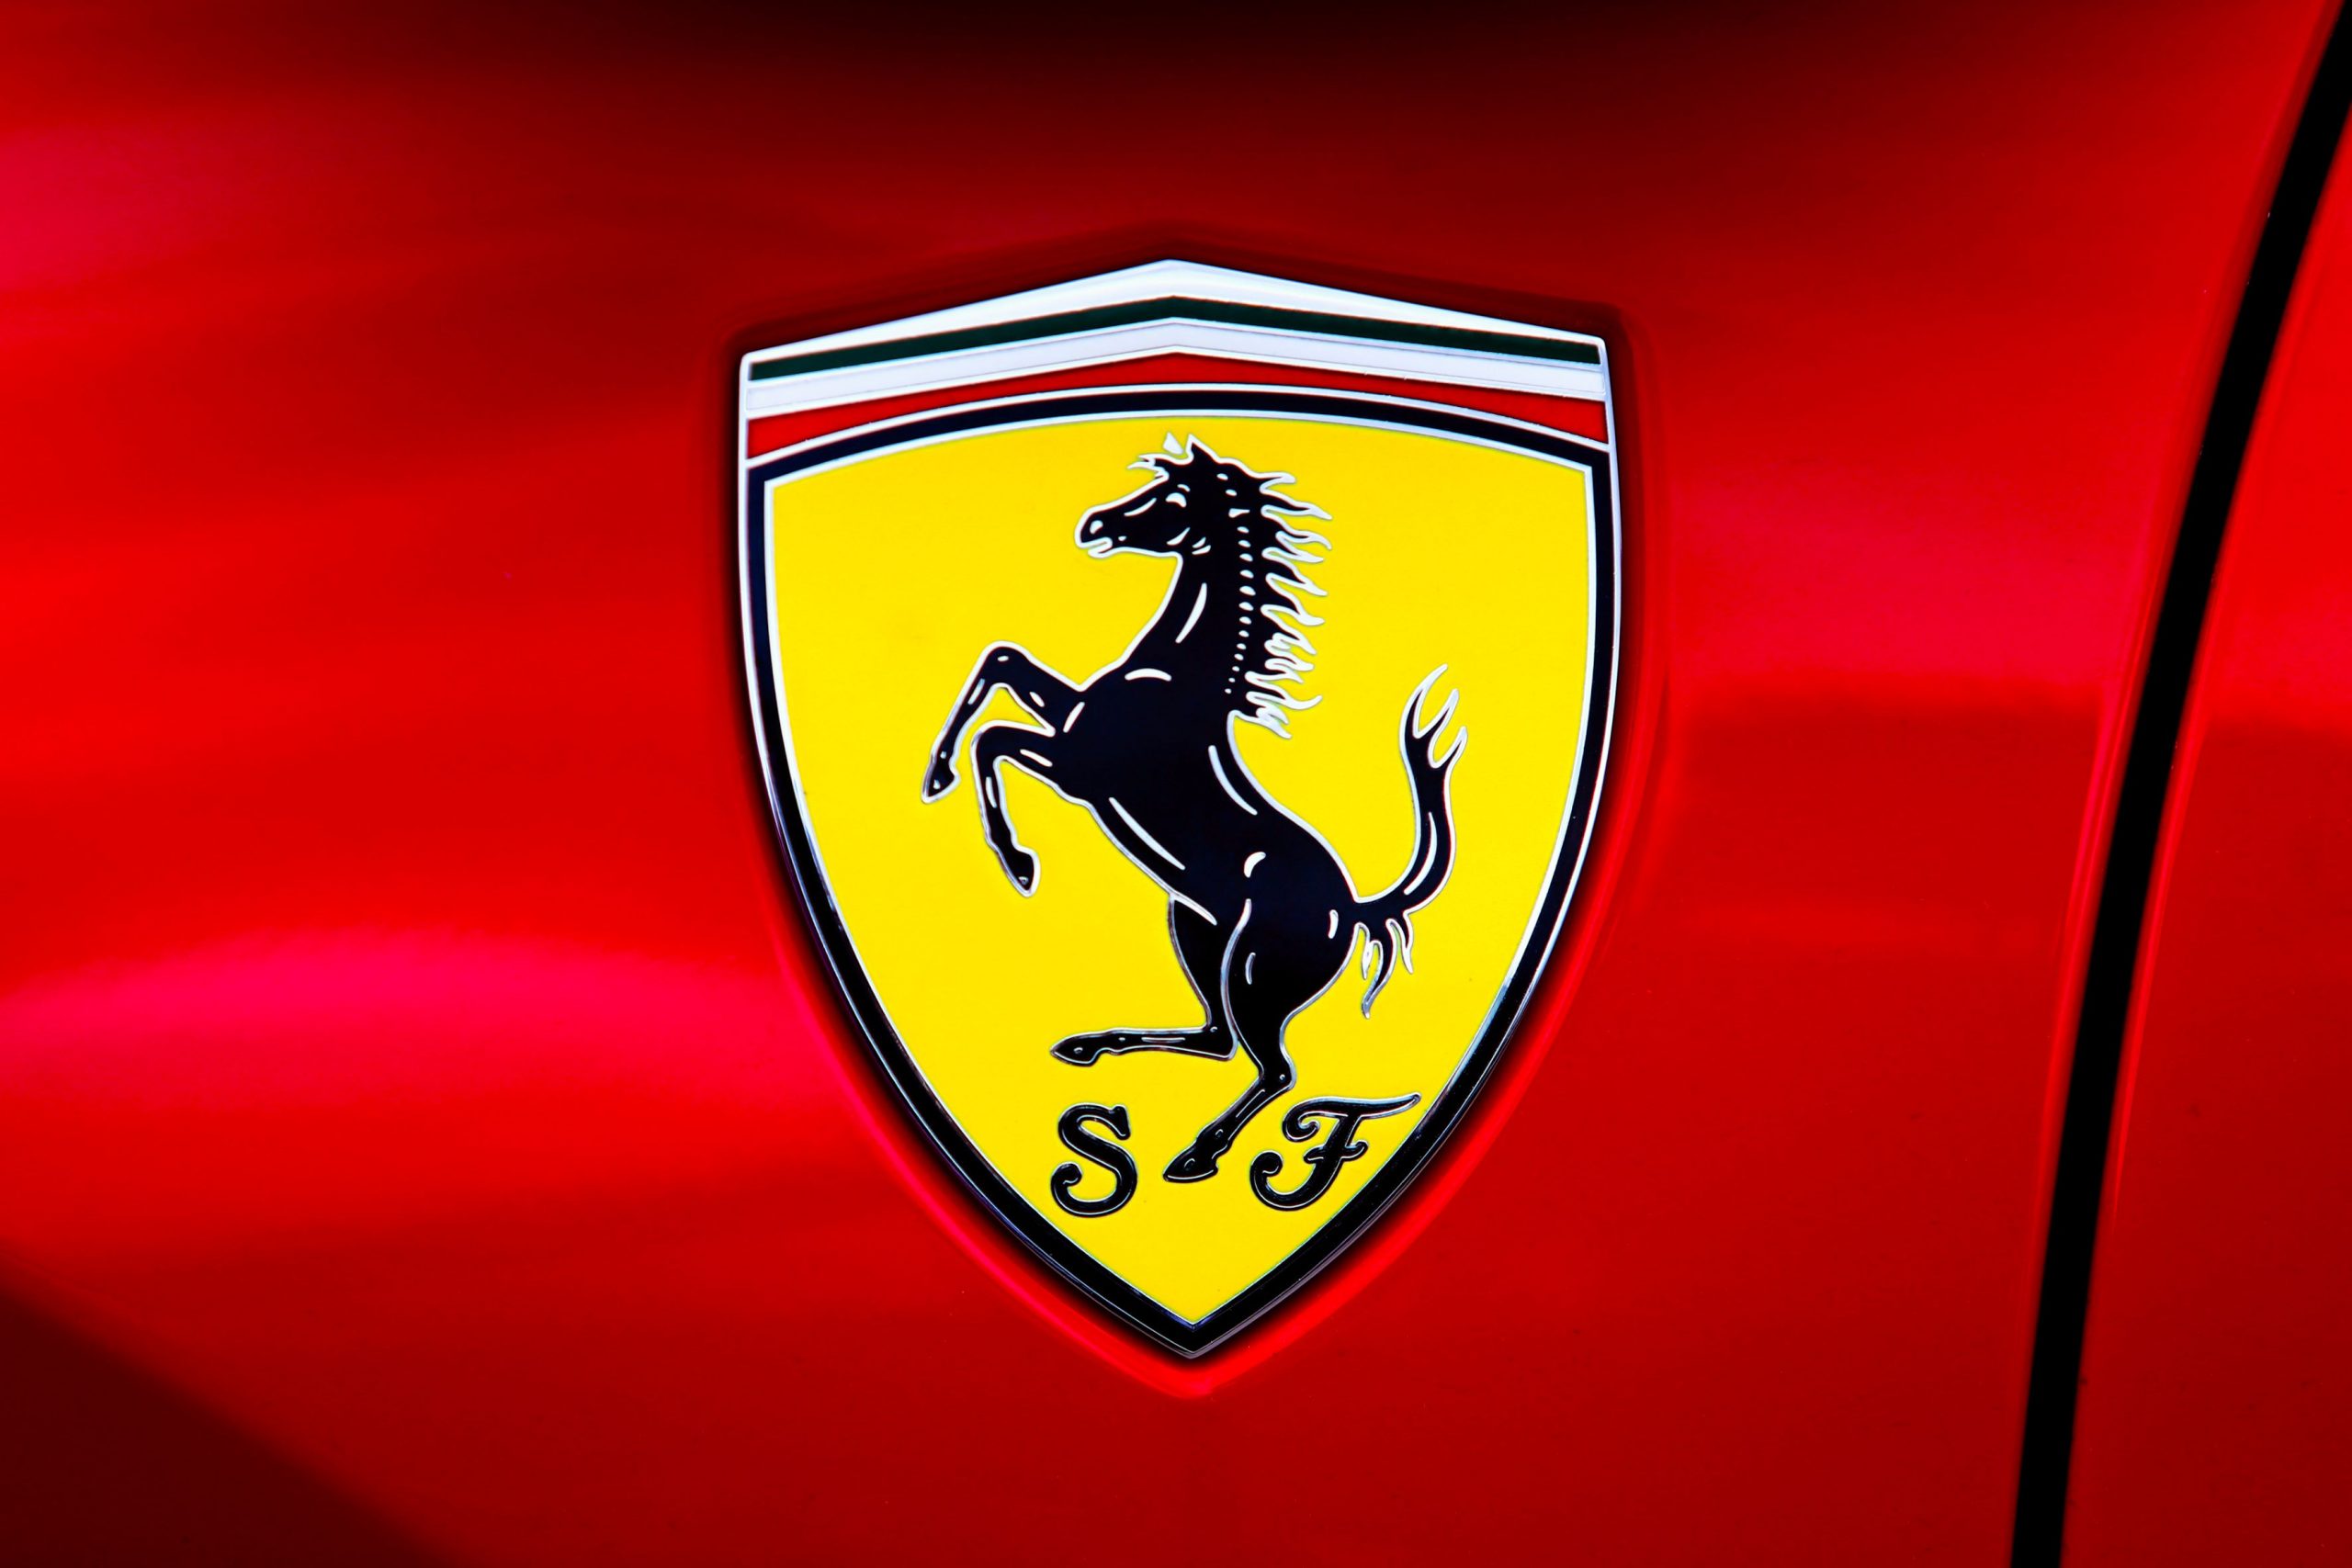 Ferrari logo on a red car.